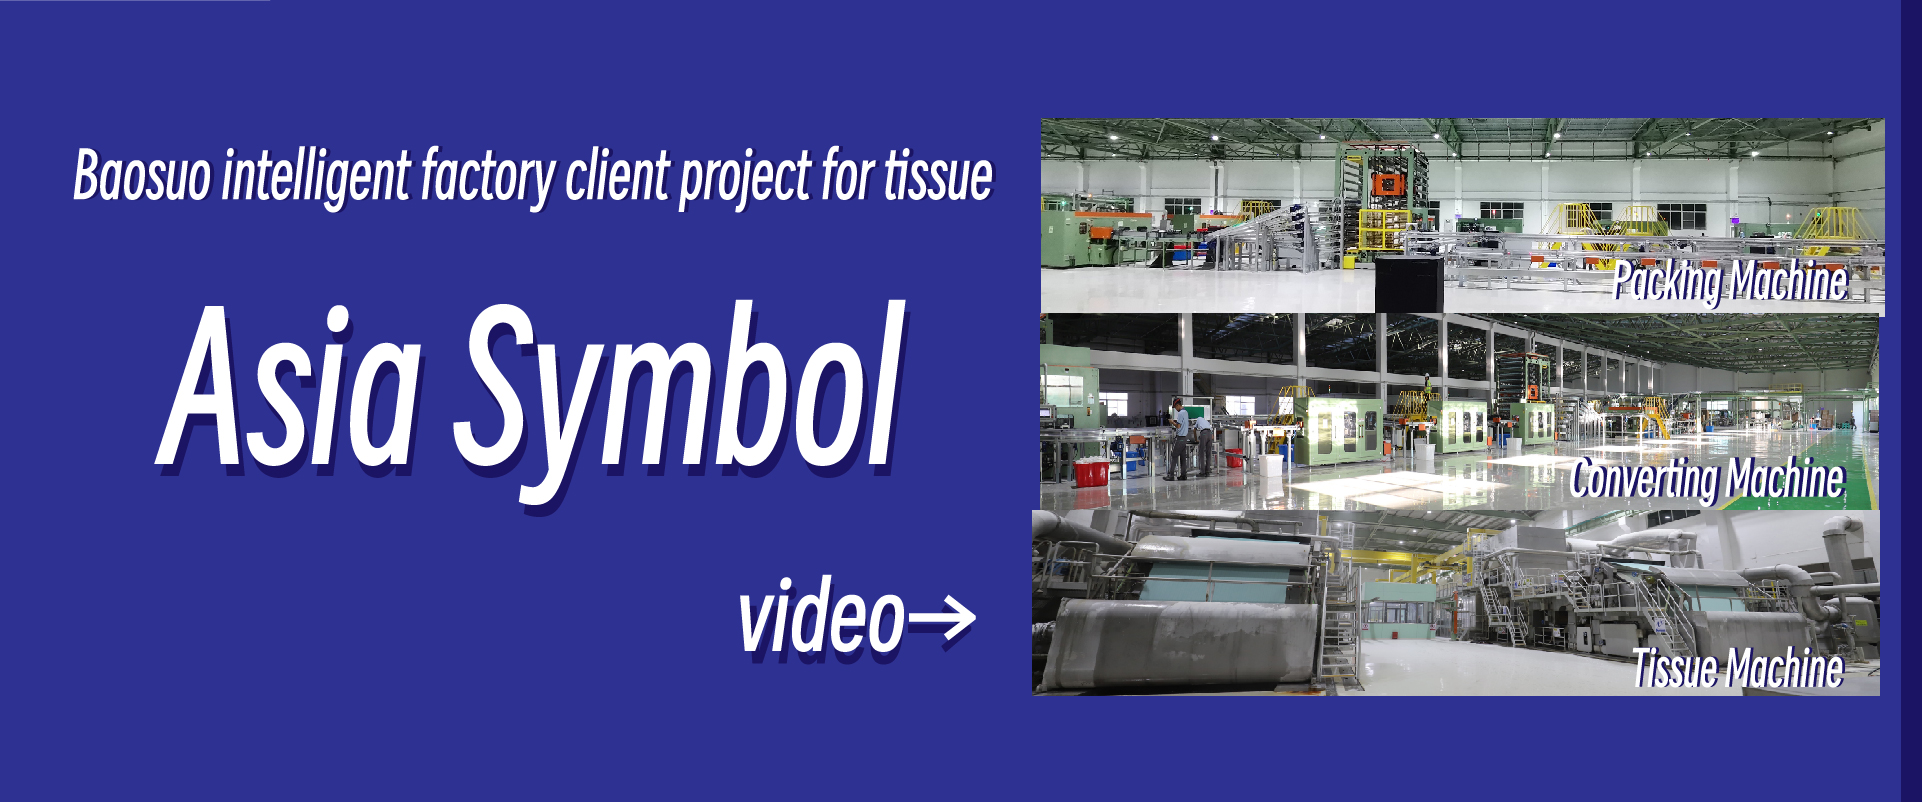 مشروع عميل مصنع باوسو
 الذكي للأنسجة —— آسيا
 رمز
